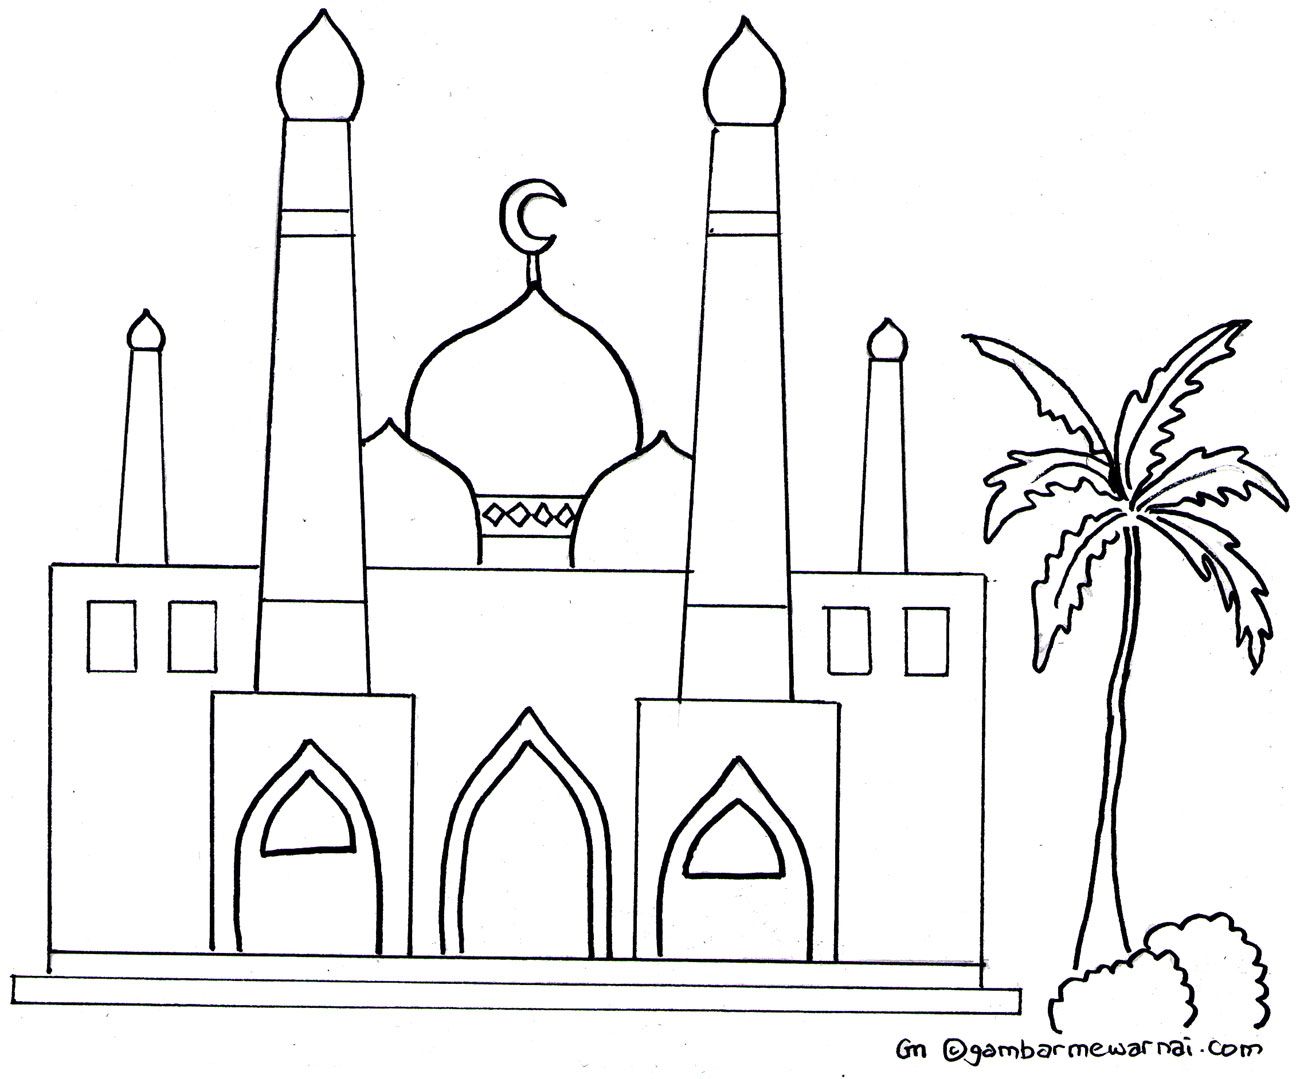 Gambar Masjid Yang Belum Diwarnai - KibrisPDR